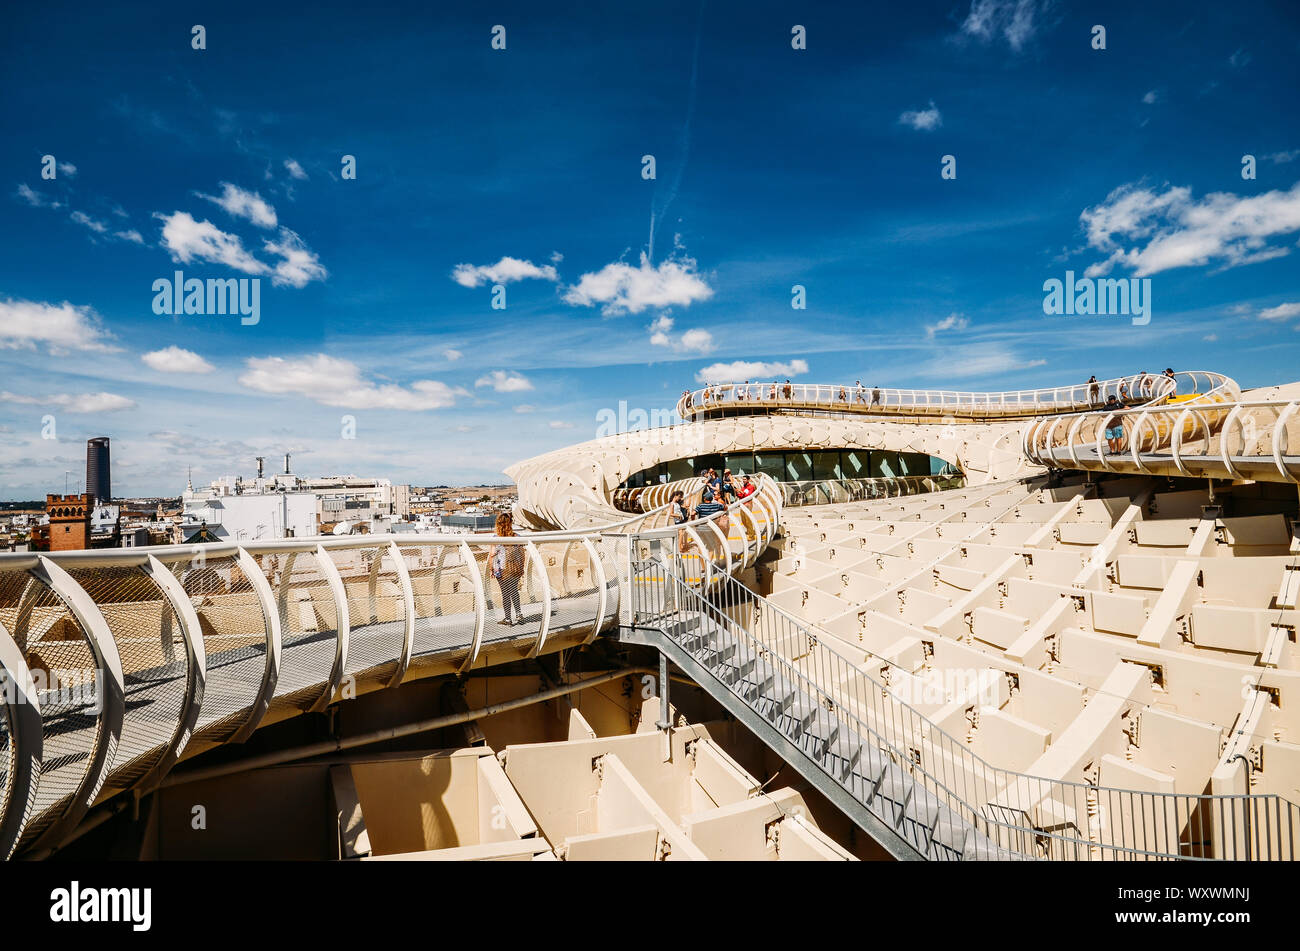 Séville, Espagne - Sept 10, 2019 : vue panoramique depuis le haut de l'espace Metropol Parasol, Setas de Sevilla, sur une journée ensoleillée Banque D'Images